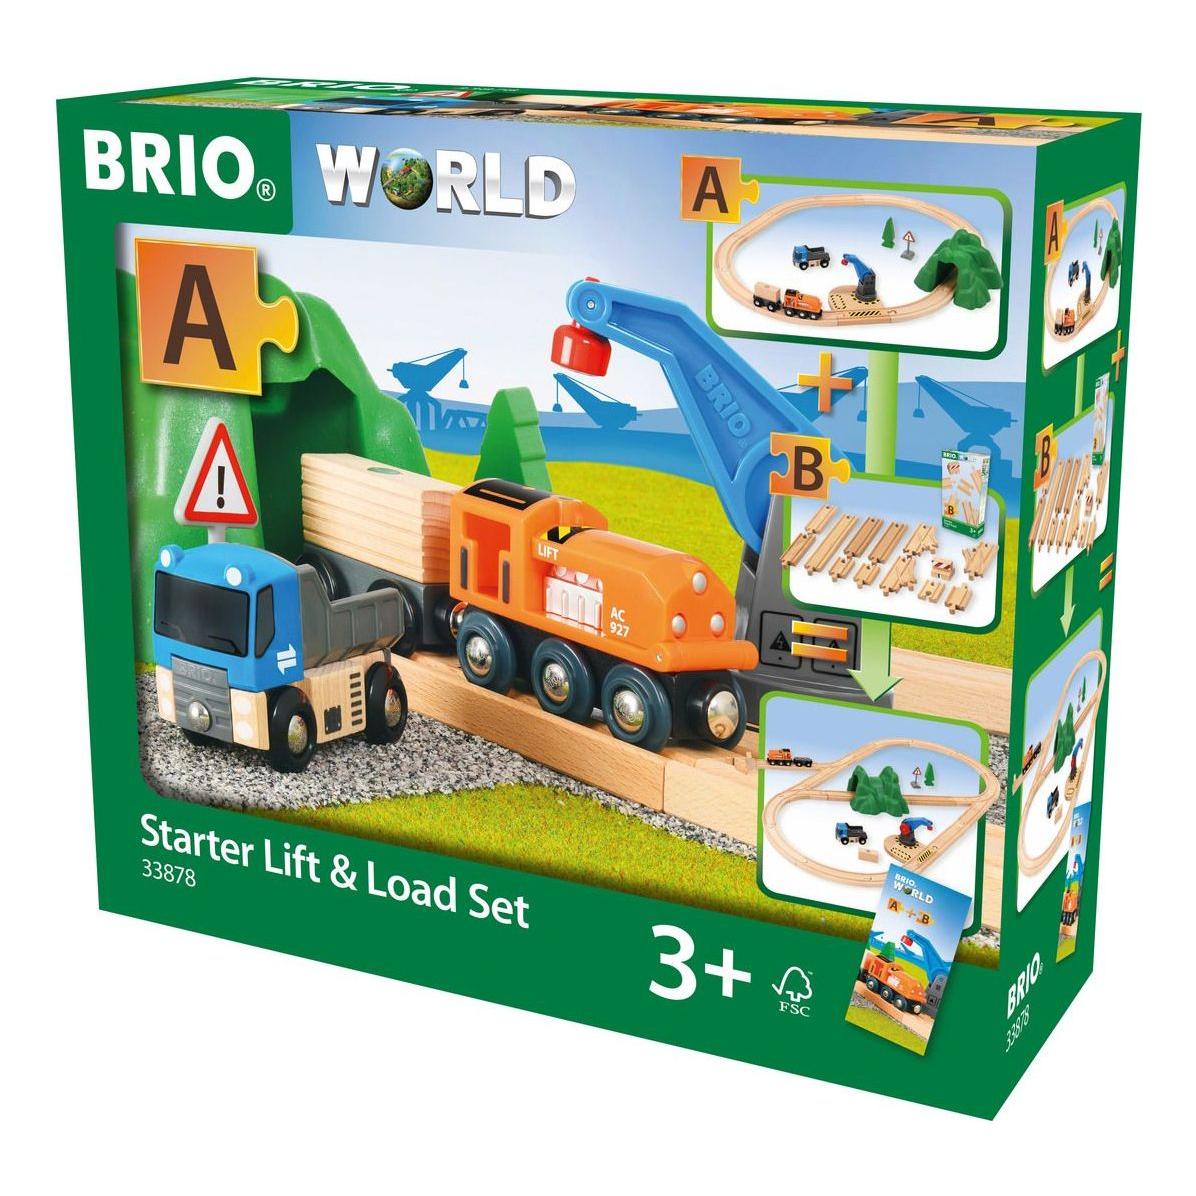 Brio World Starter Lift & Load Set A BRIO